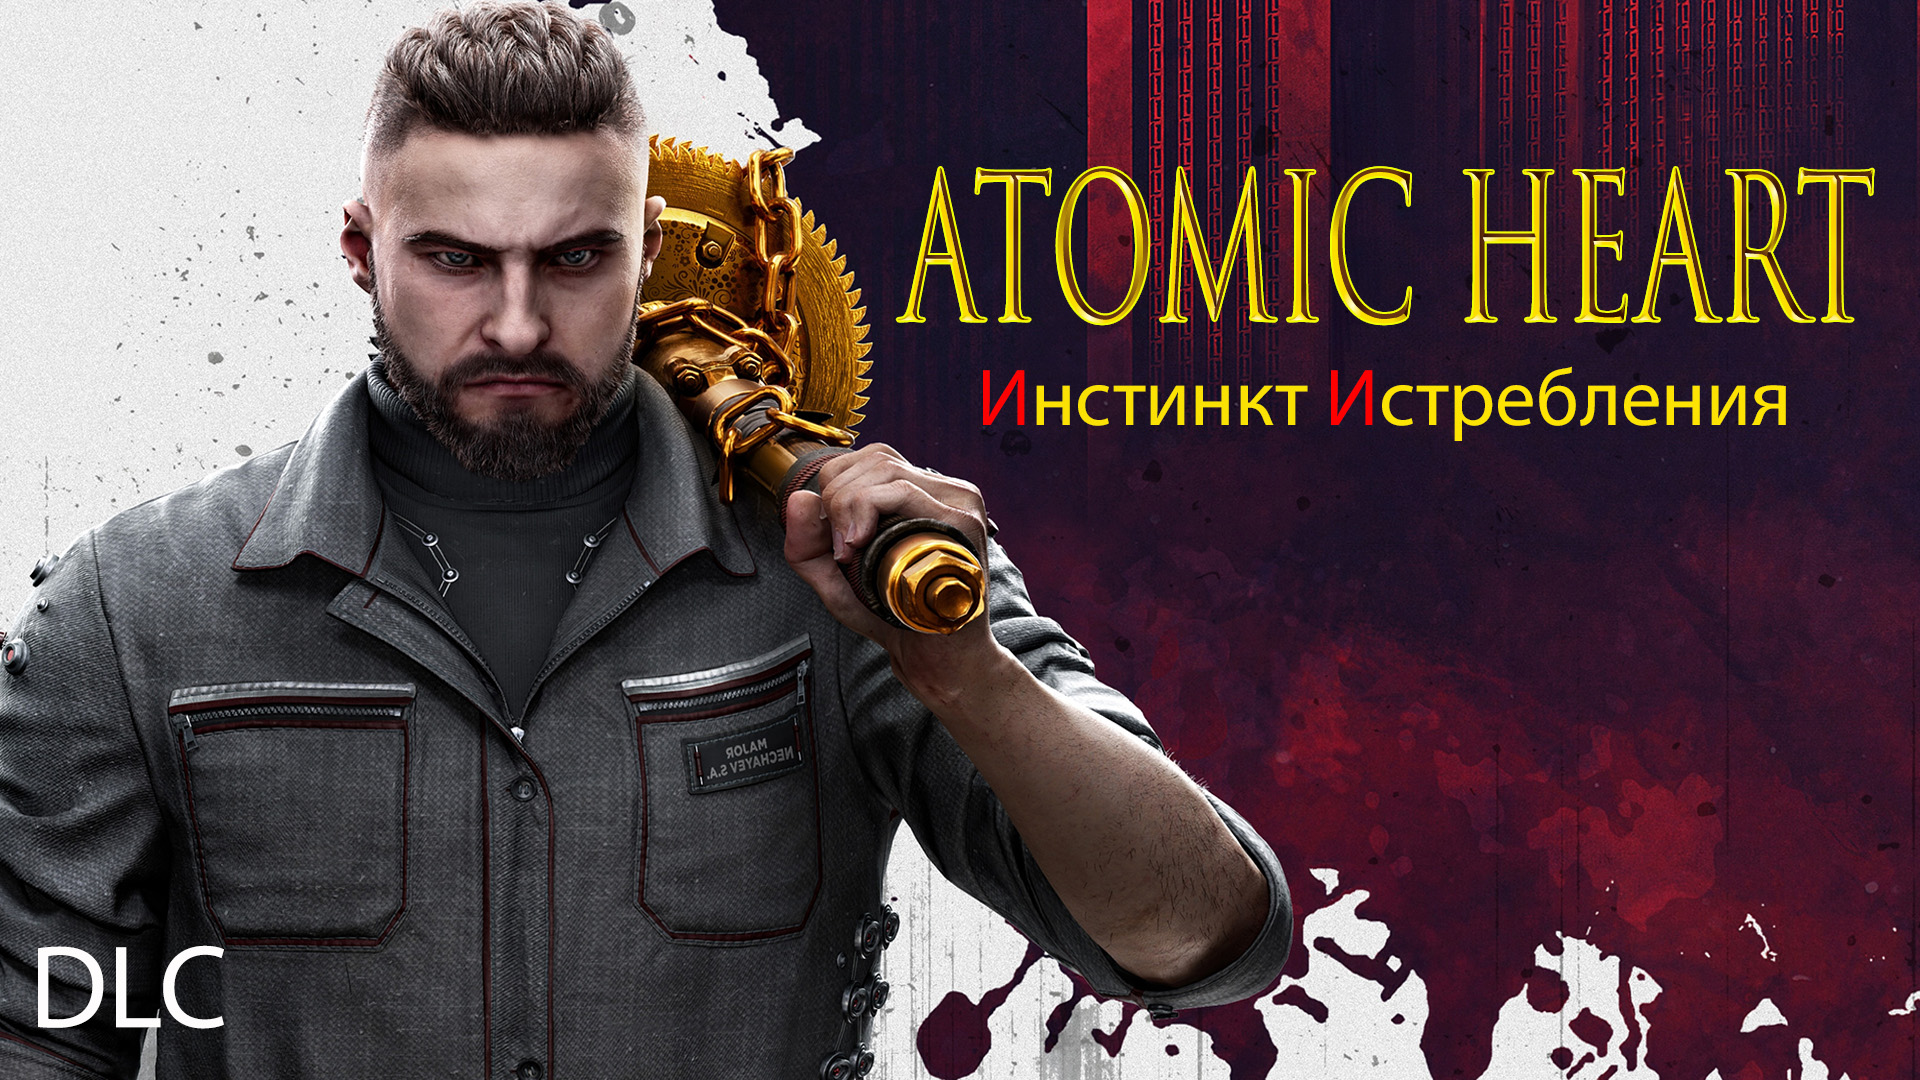 Atomic Heart (2) ПЕРВОЕ DLC - ИНСТИНКТ ИСТРЕБЛЕНИЯ - Финал - Концовка